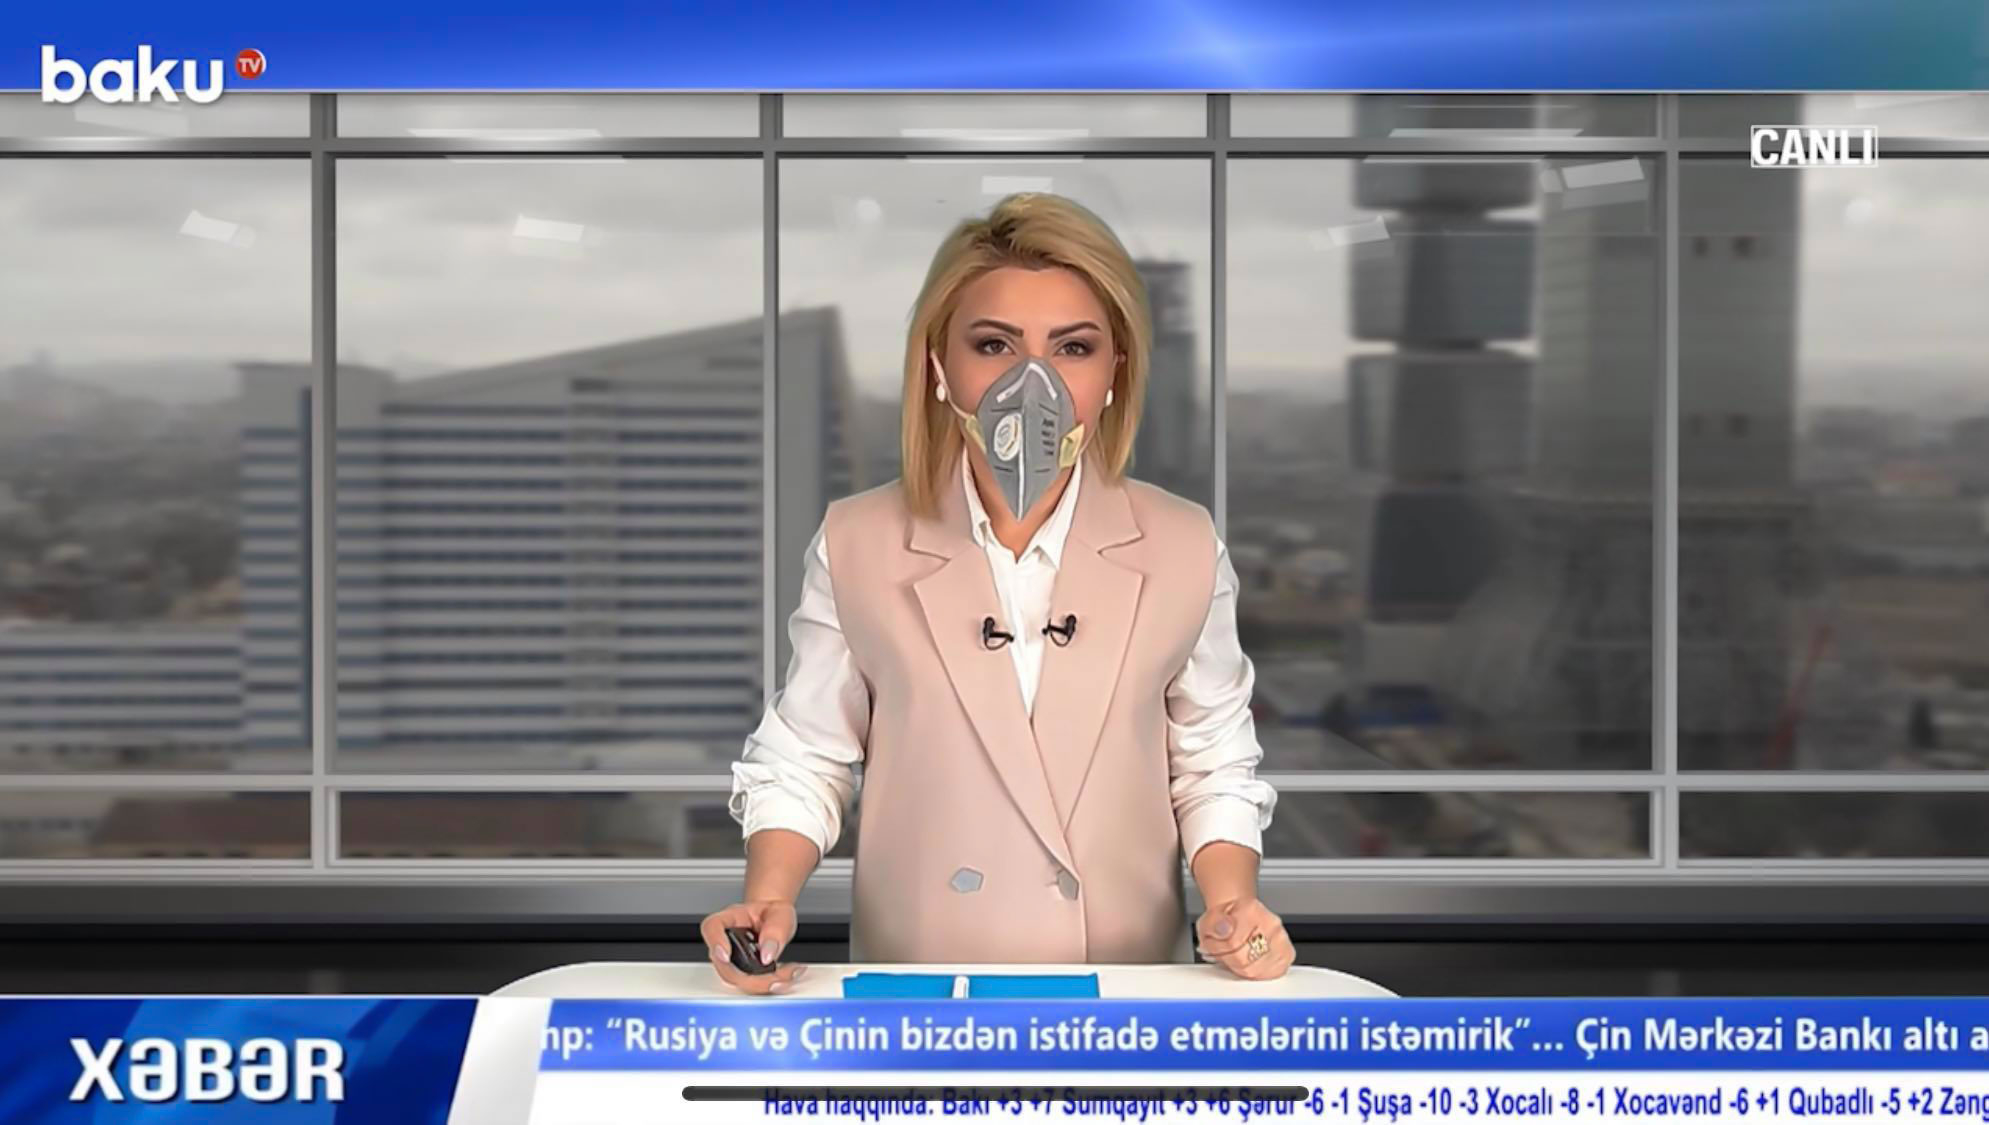 BAKU.TV “Virusa meydan oxuyaq!” fləşmobuna qoşuldu - VİDEO